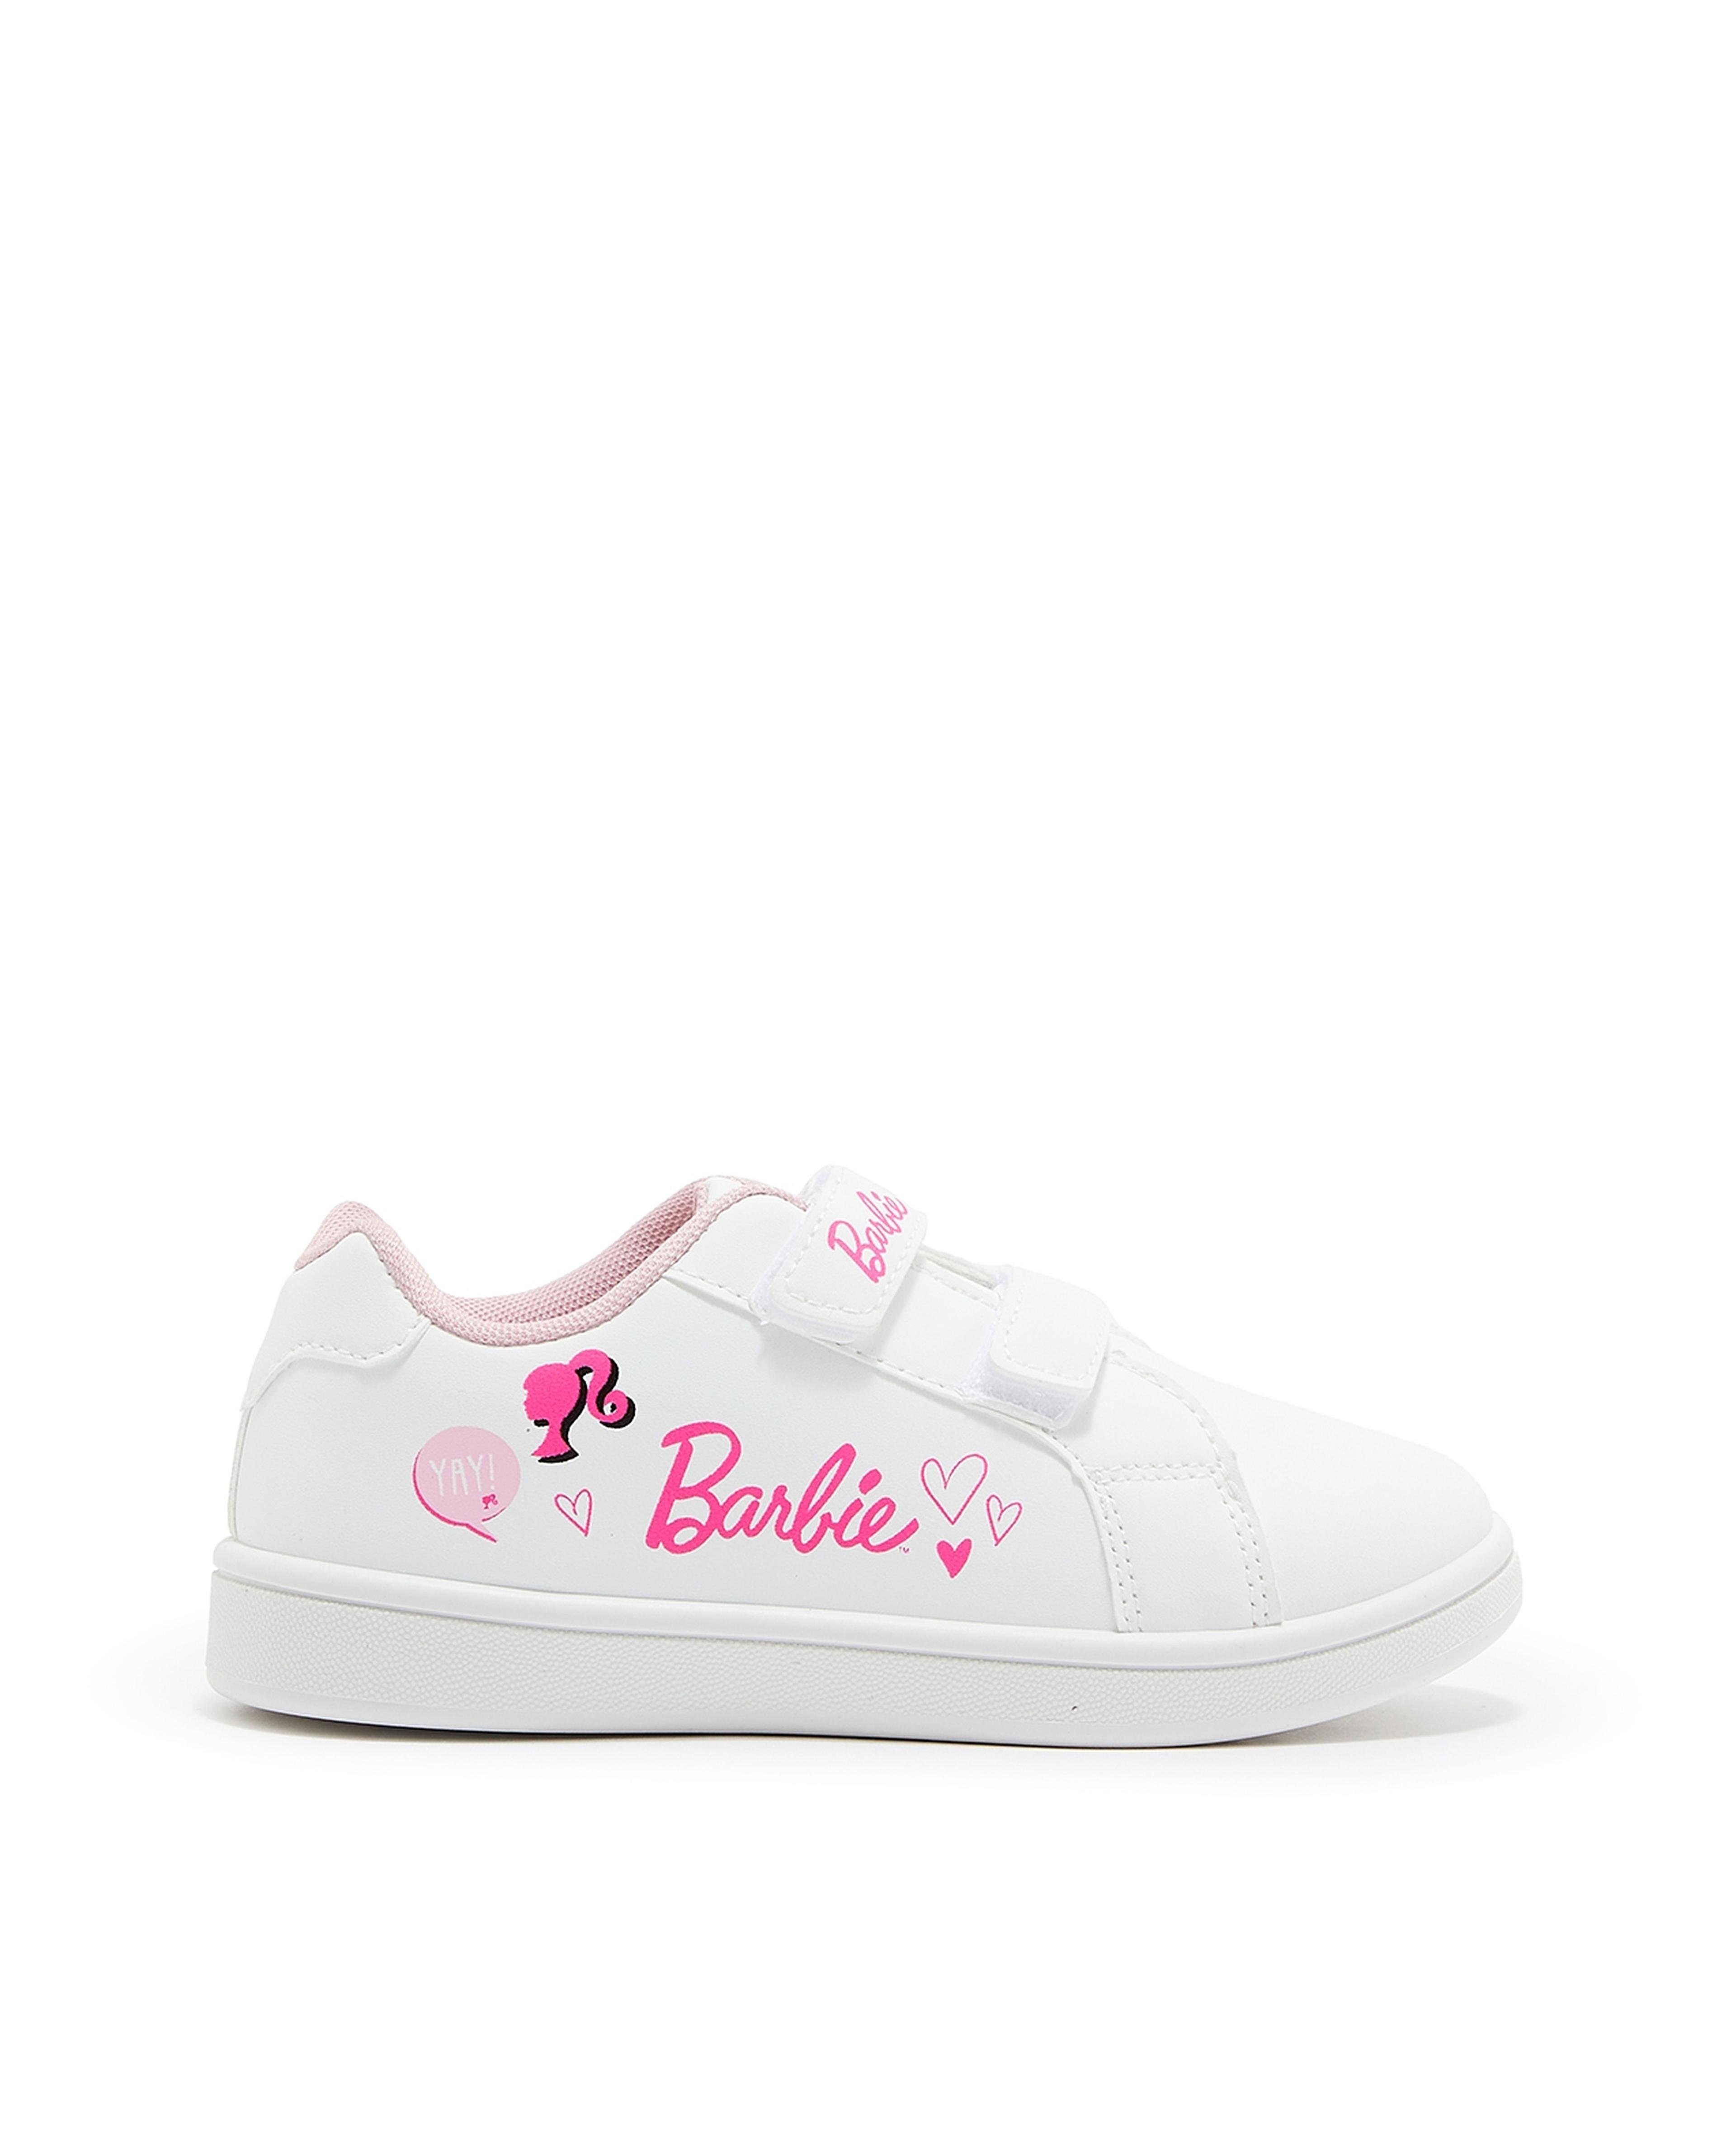 Barbie Print Velcro Sneakers